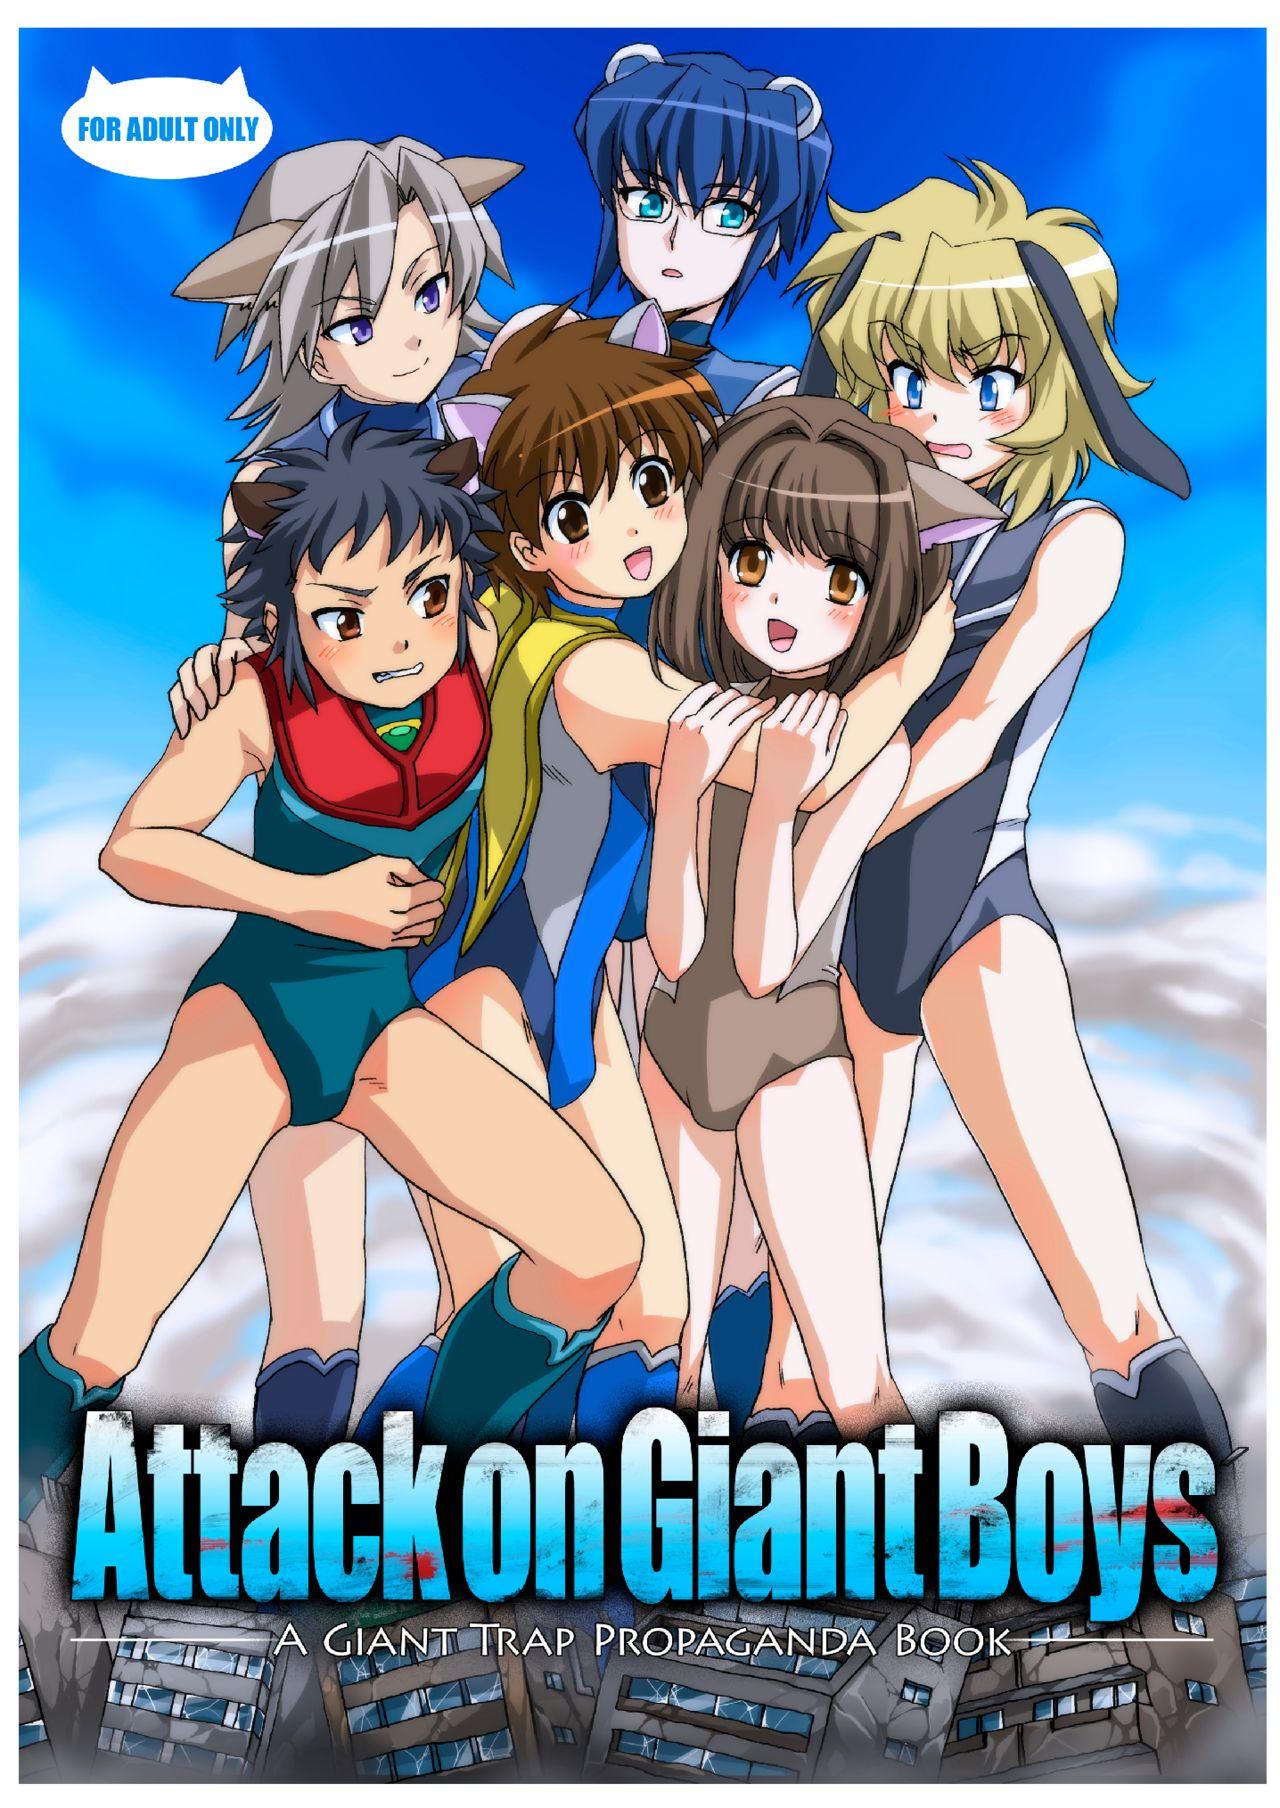 Shingeki no Kyodai Shounens | ATTACK ON GIANT BOYS 1